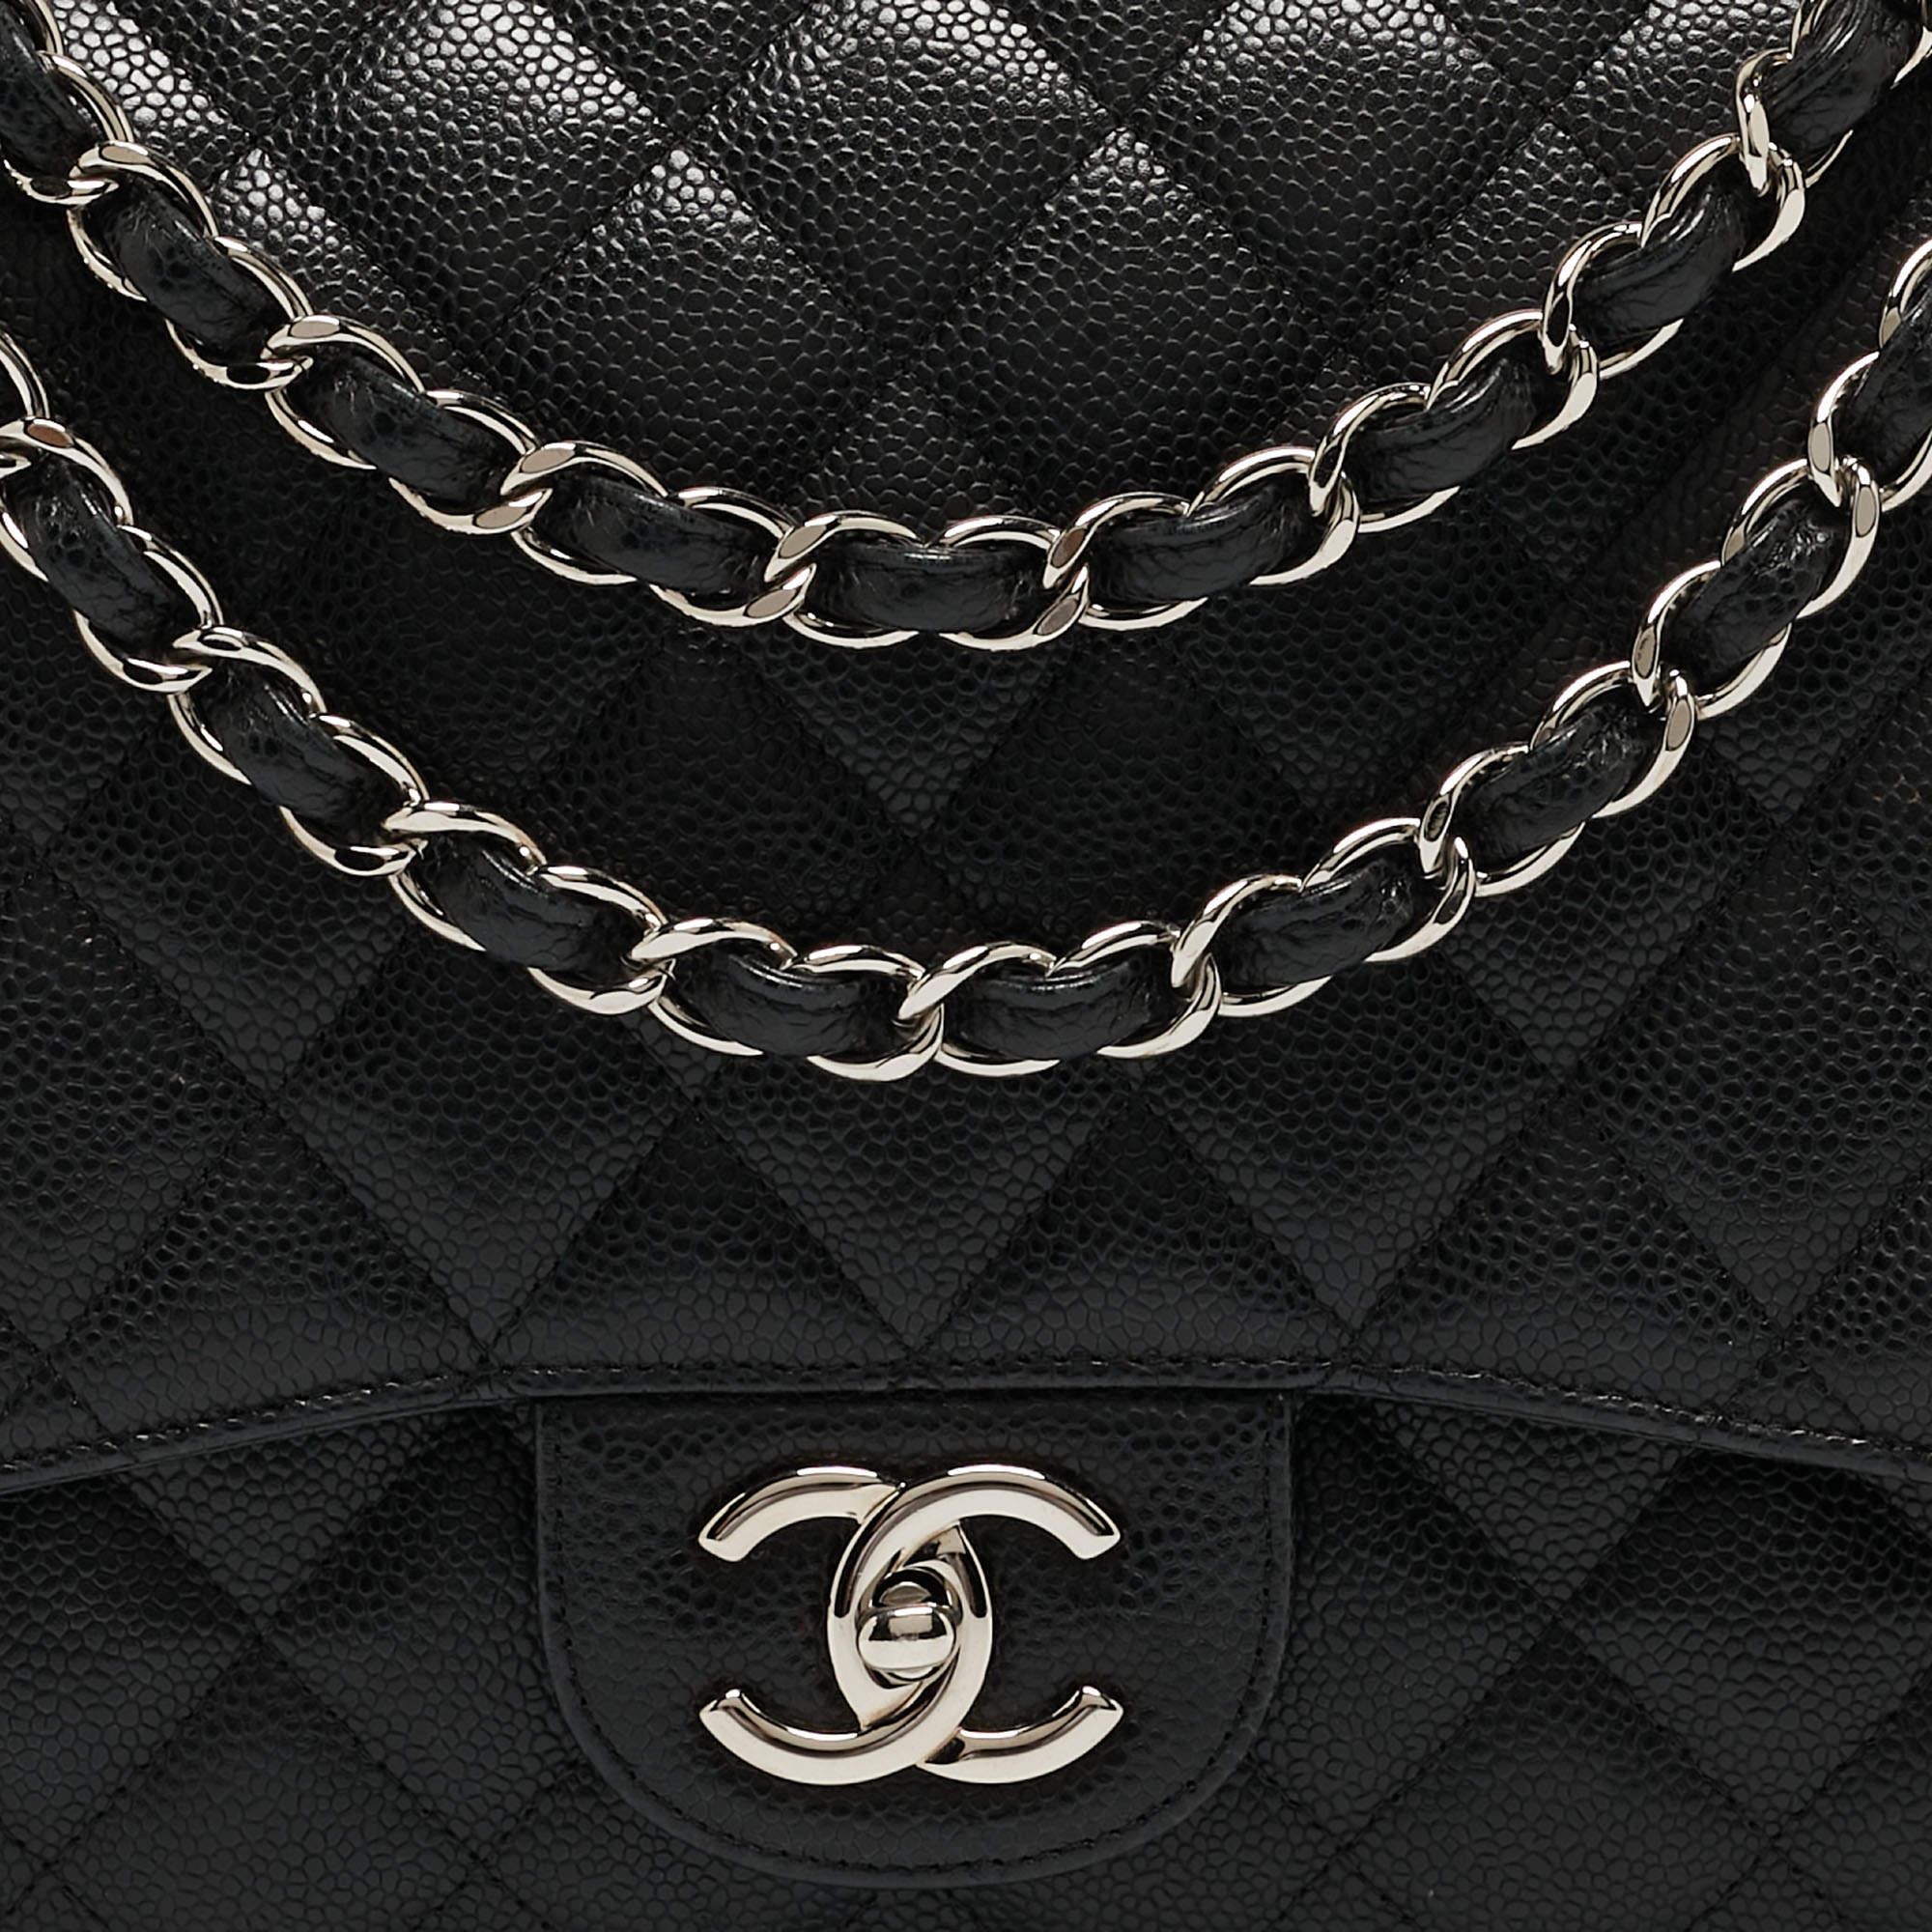 Chanel - Sac à double rabat classique Maxi en cuir texturé noir matelassé 15